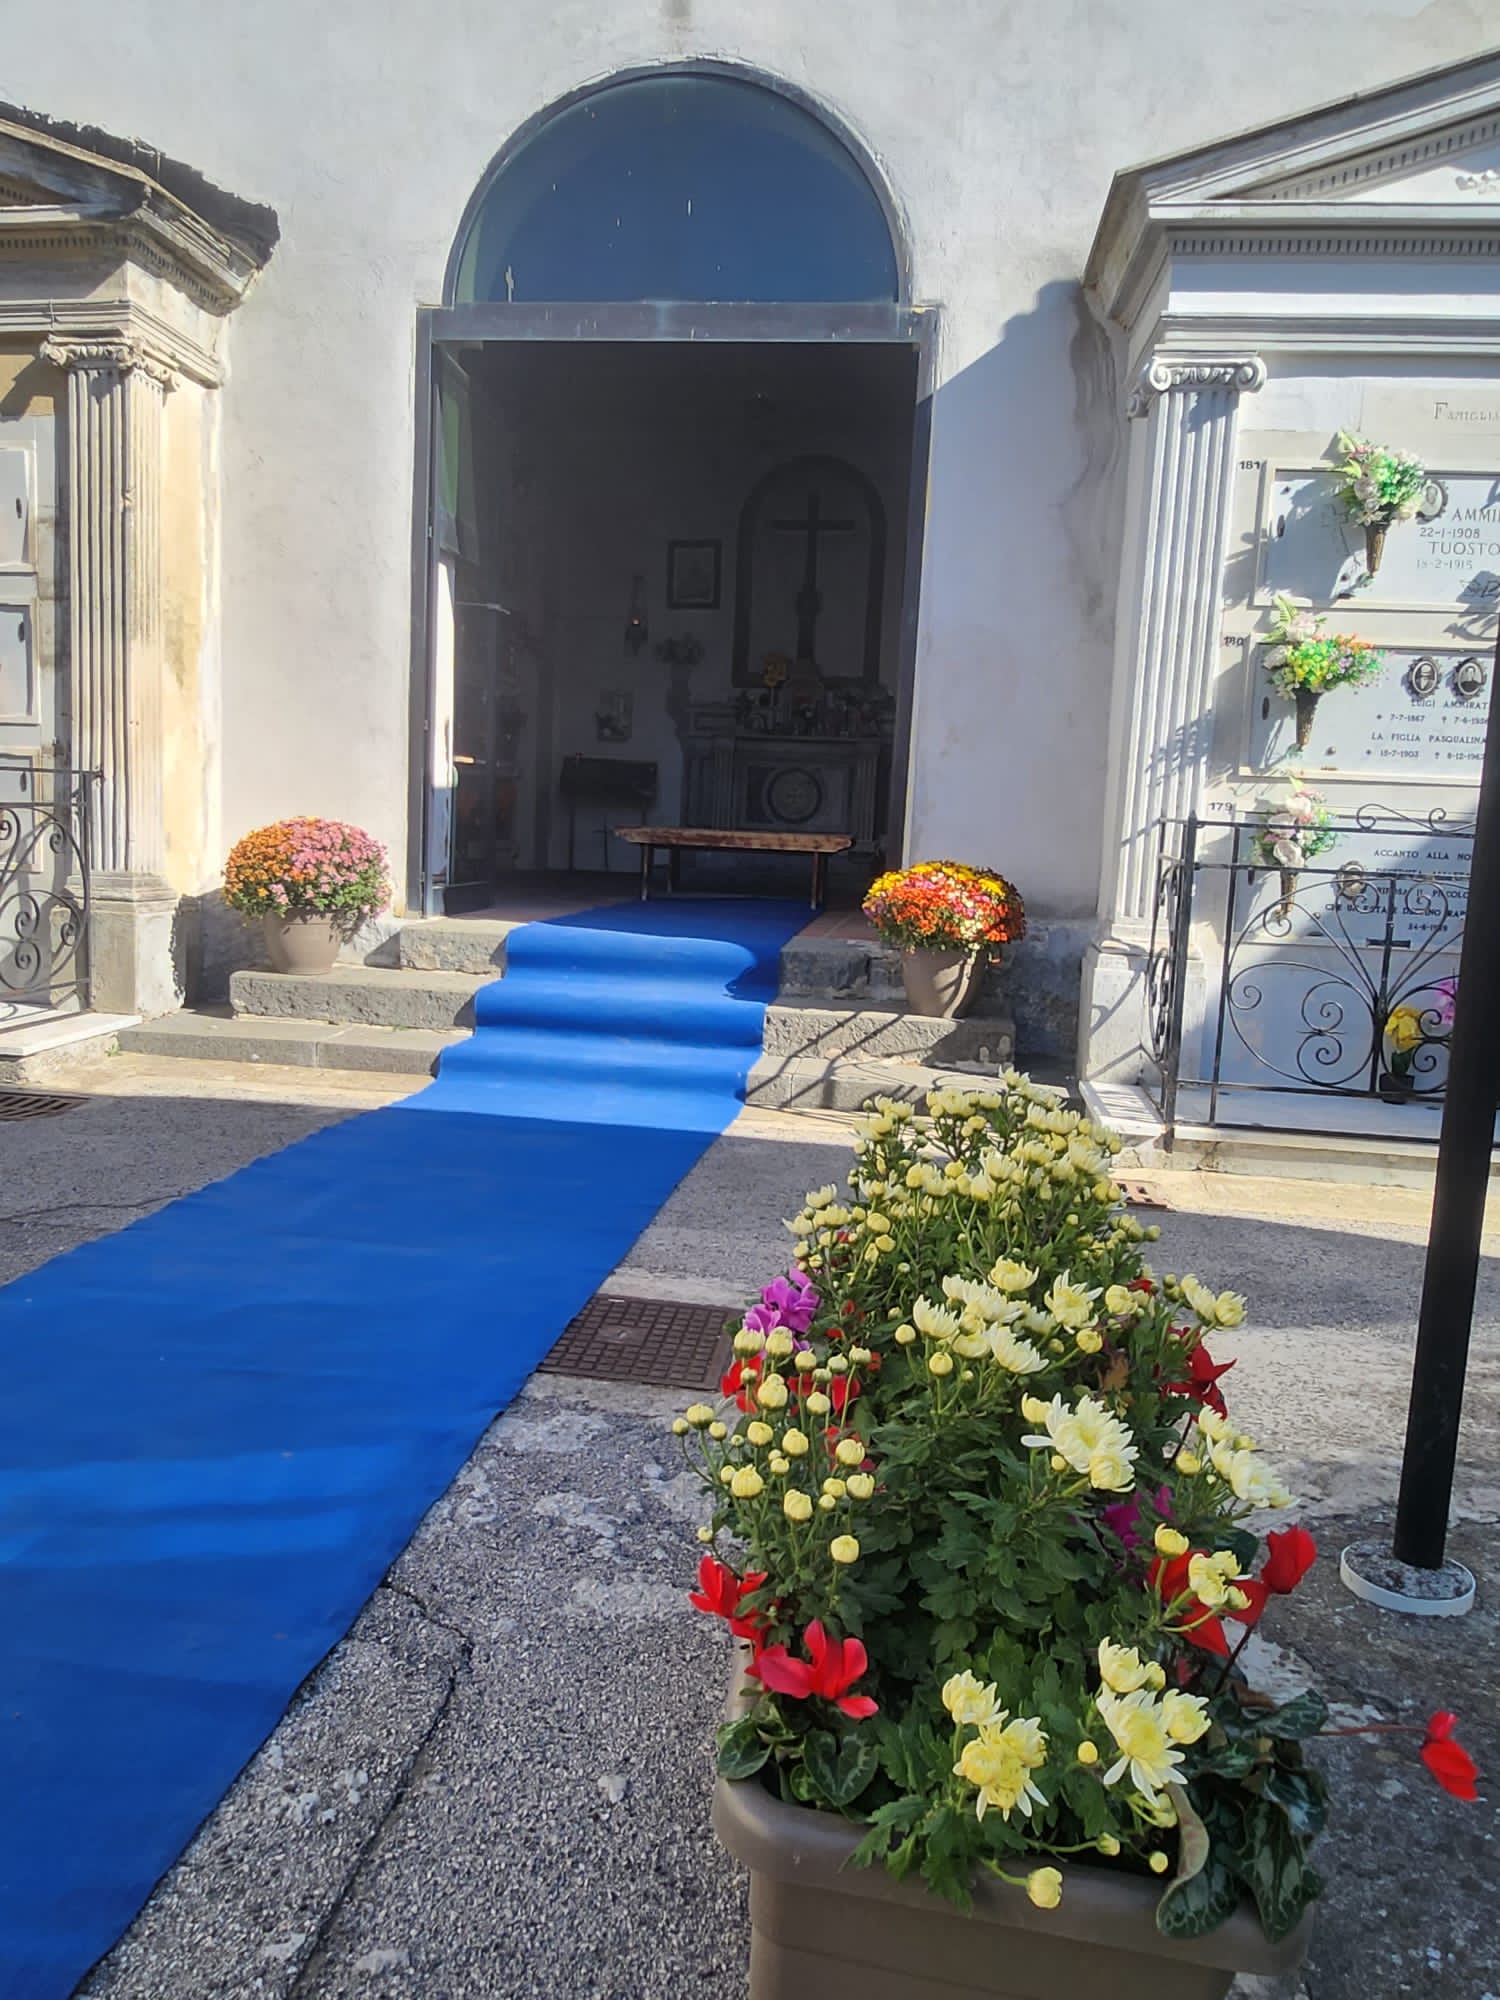 TUFINO. Accoglienza sbalorditiva al cimitero, un look esclusivo: fiori, tappeto blu e la musica di arpe e violini